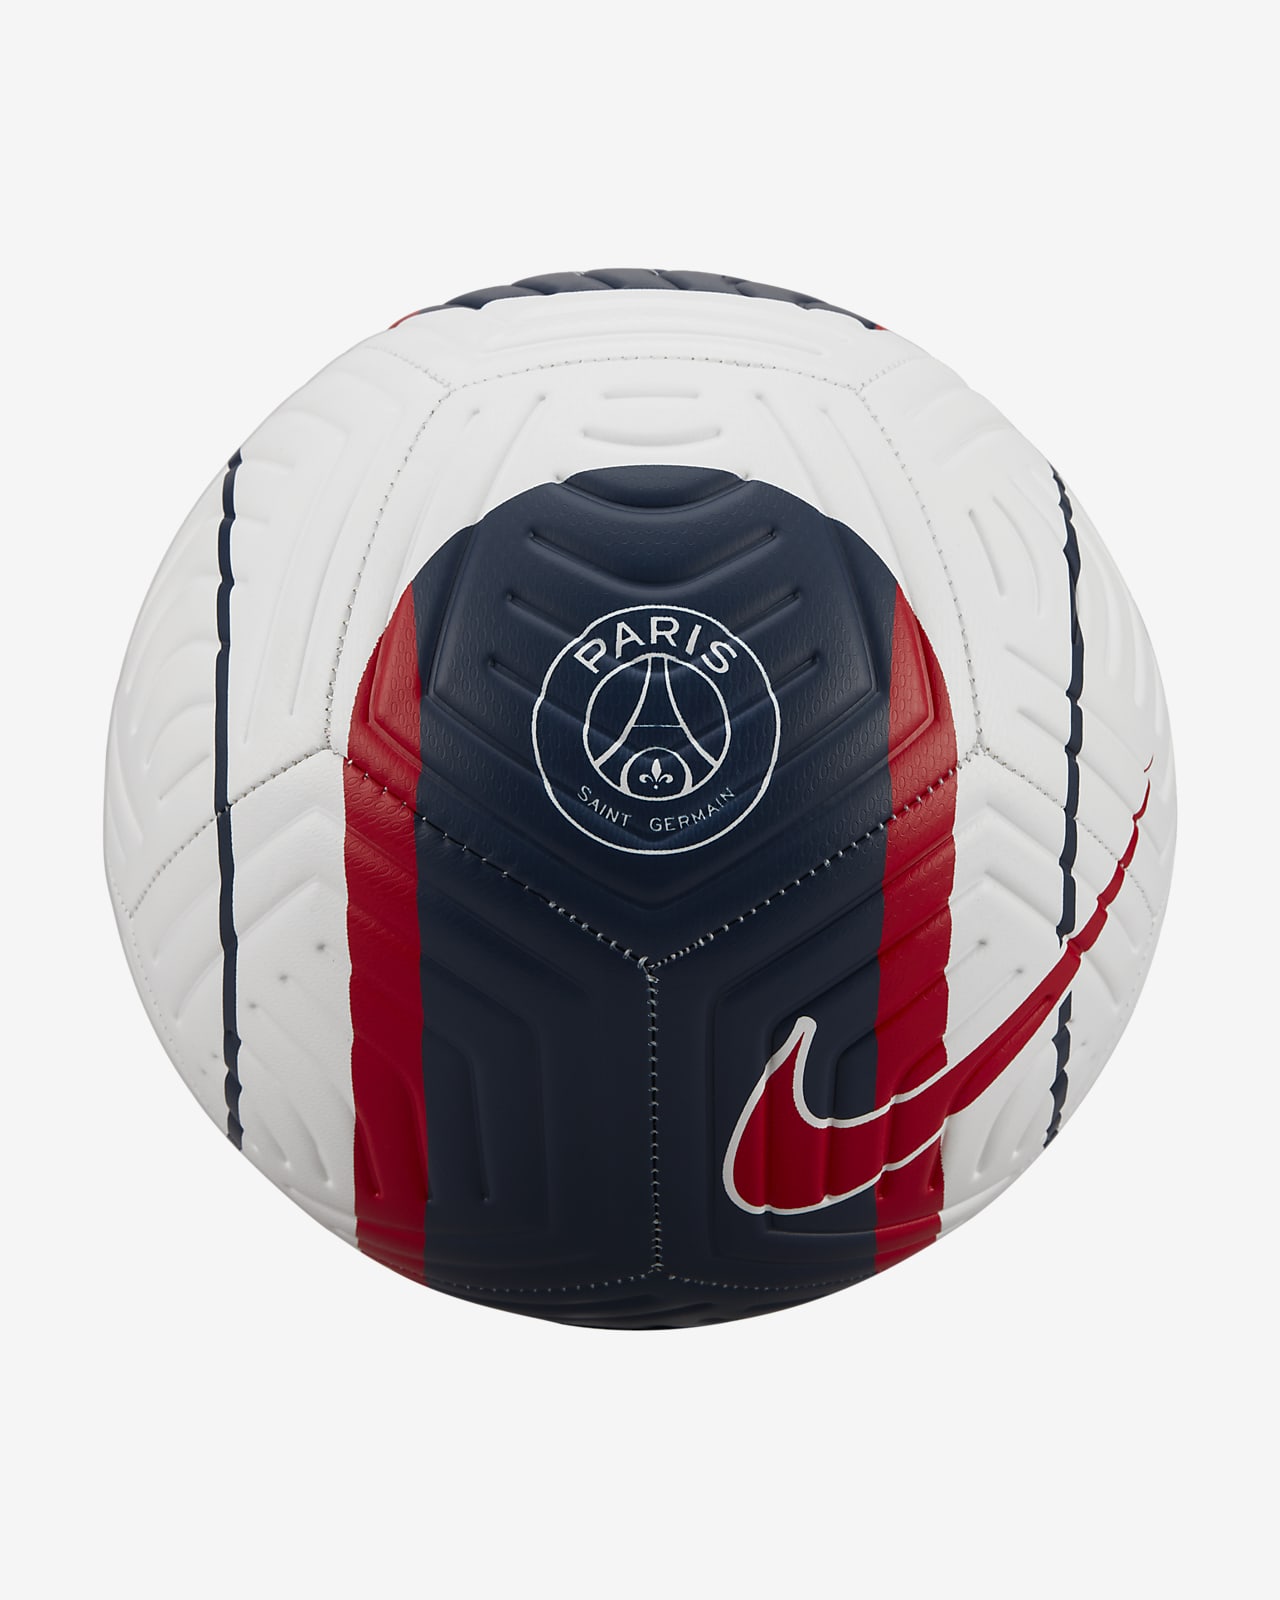 Saint-Germain Strike Soccer Ball. Nike.com